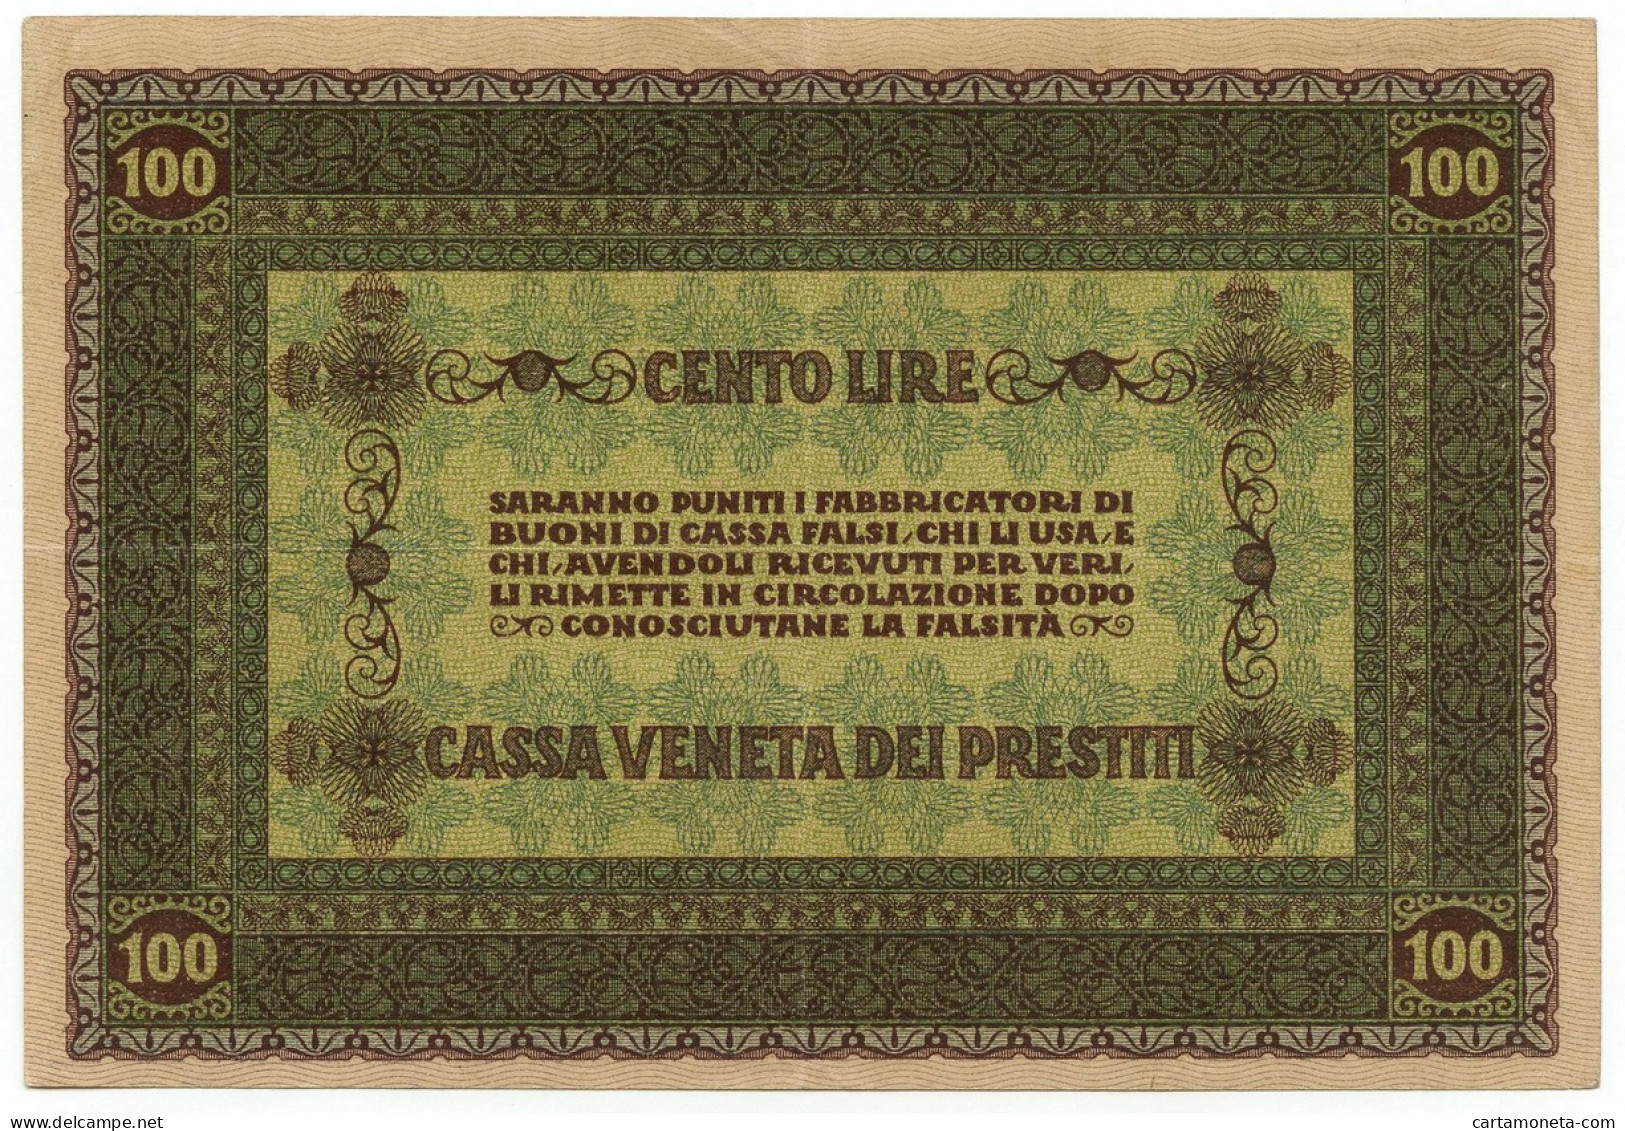 100 LIRE CASSA VENETA DEI PRESTITI OCCUPAZIONE AUSTRIACA 02/01/1918 QSPL - Austrian Occupation Of Venezia